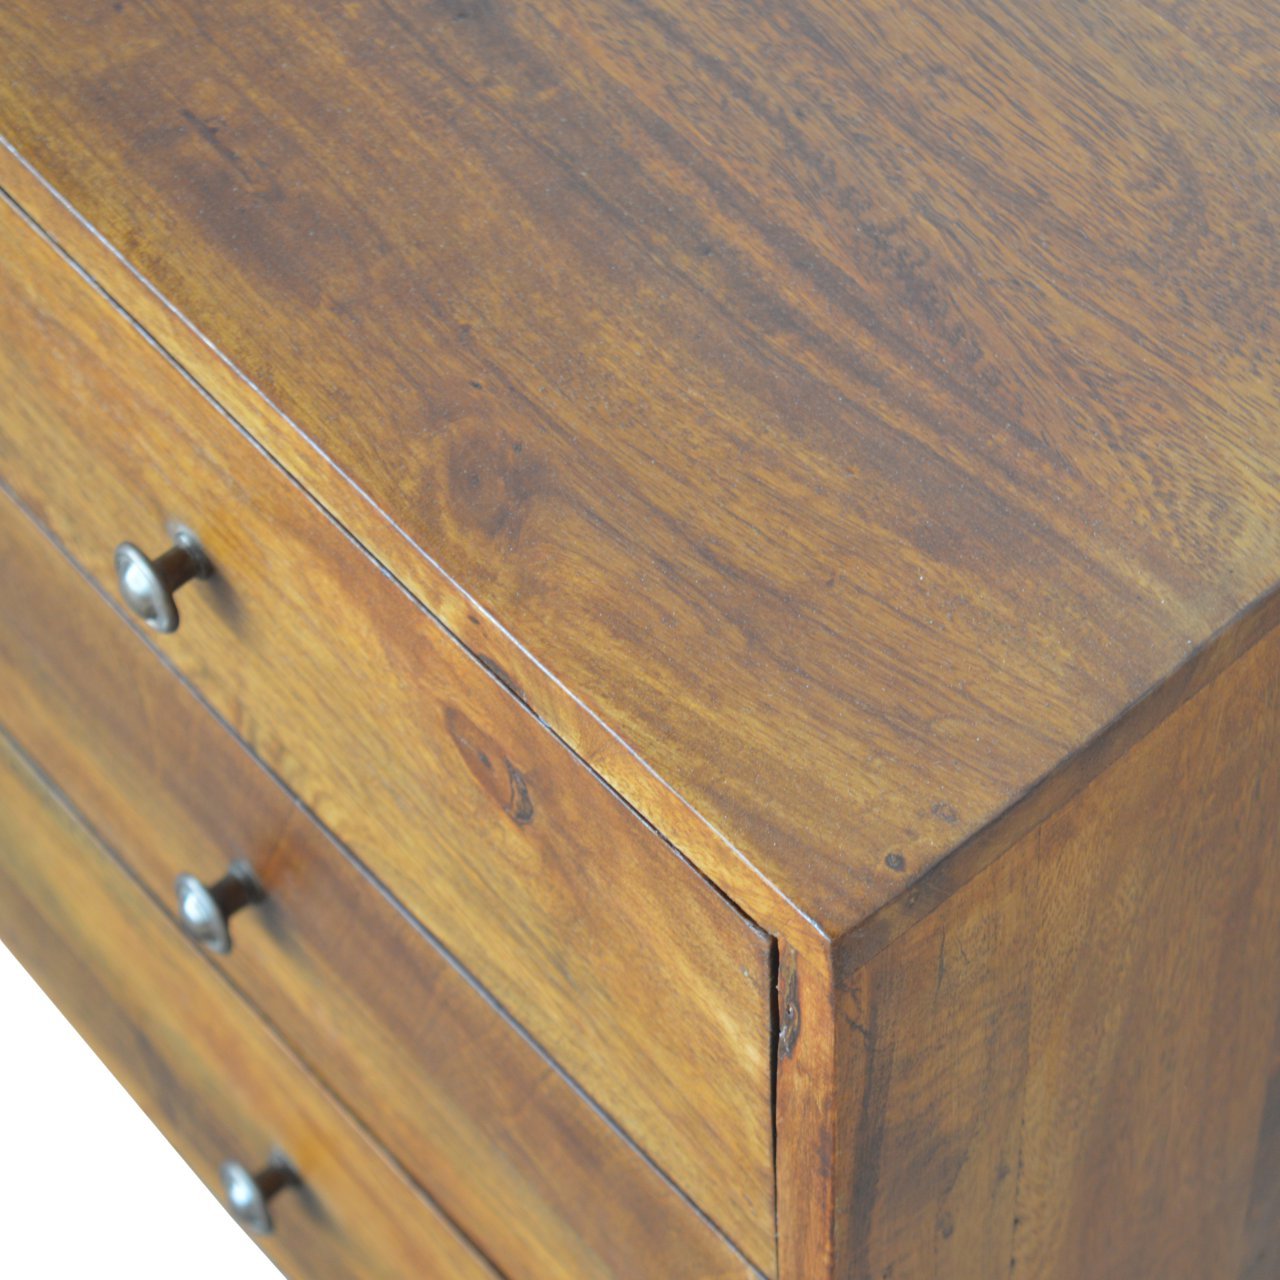 Carved Chestnut Sideboard - Chestnut Solid Wood